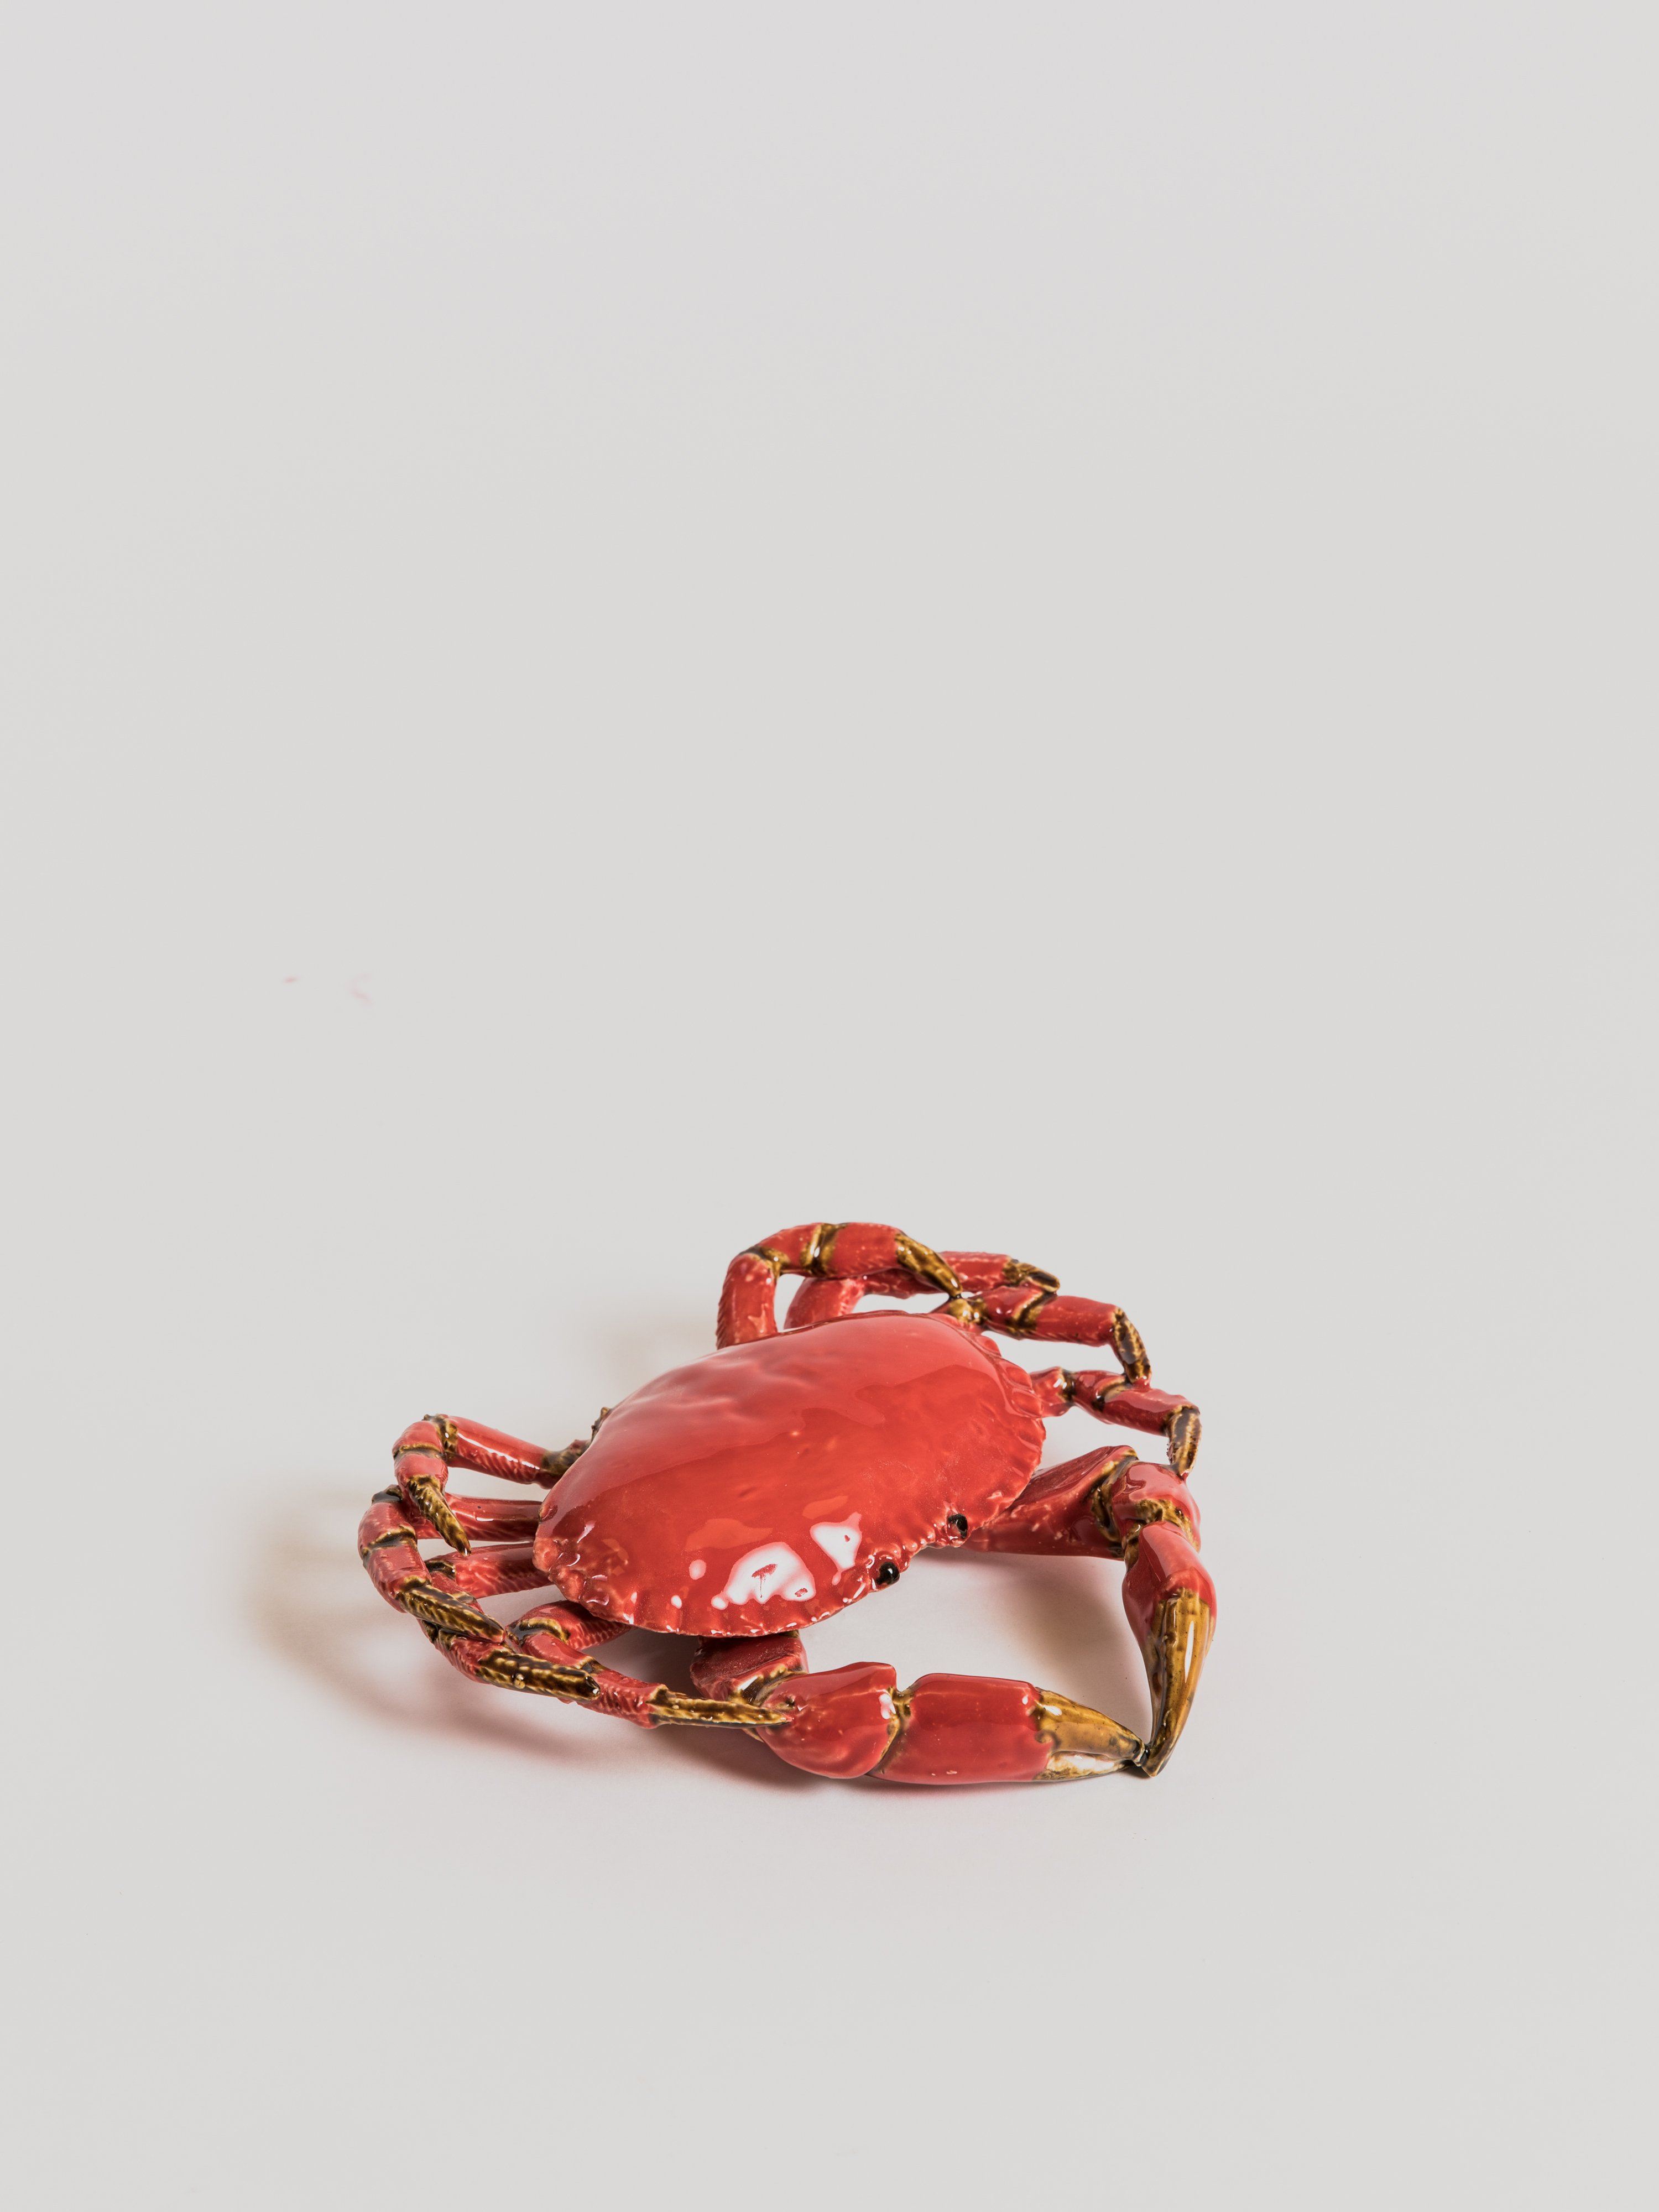 Crab - Ceramic Statue Bull & Stein Red 22 cm 